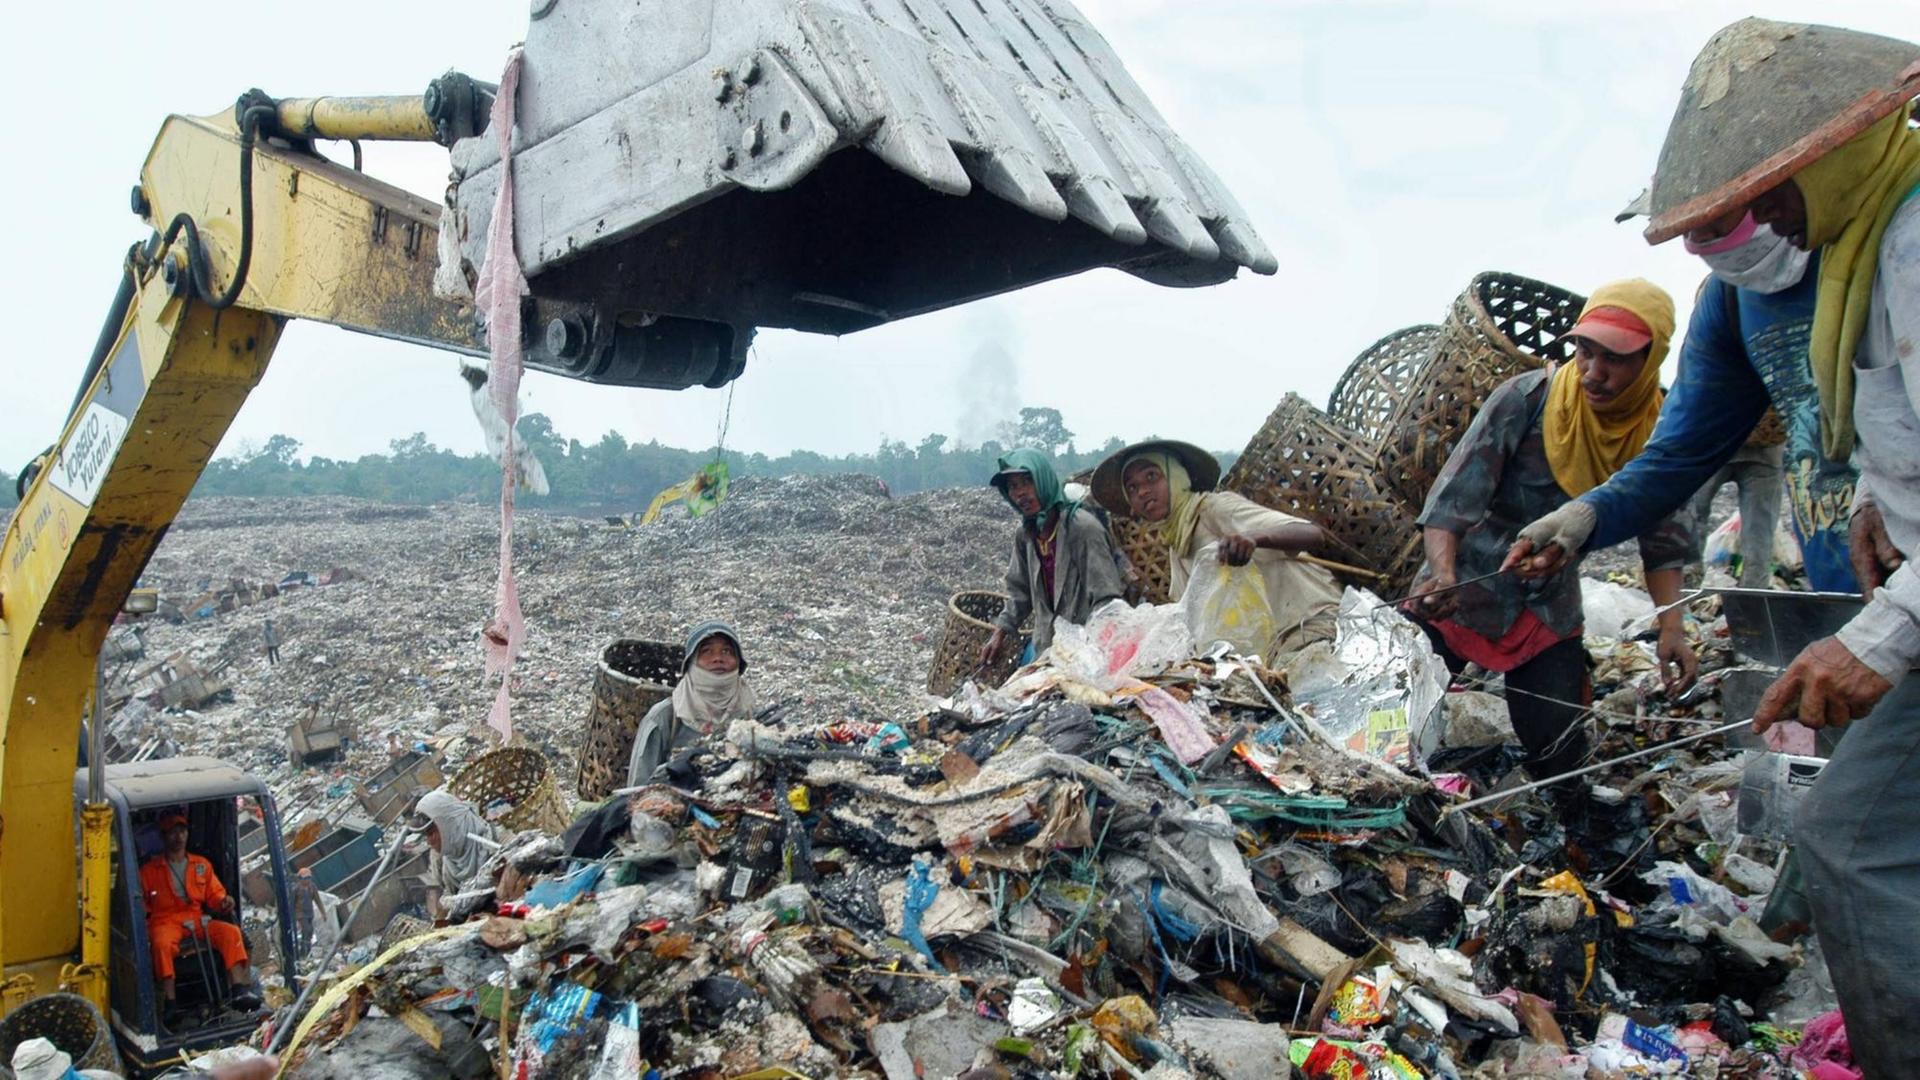 Straßenkinder stehen inmitten von Abfällen neben einem Bagger auf einer Müllhalde in Malaysia, Aufnahme geschätzt, ca. 2012